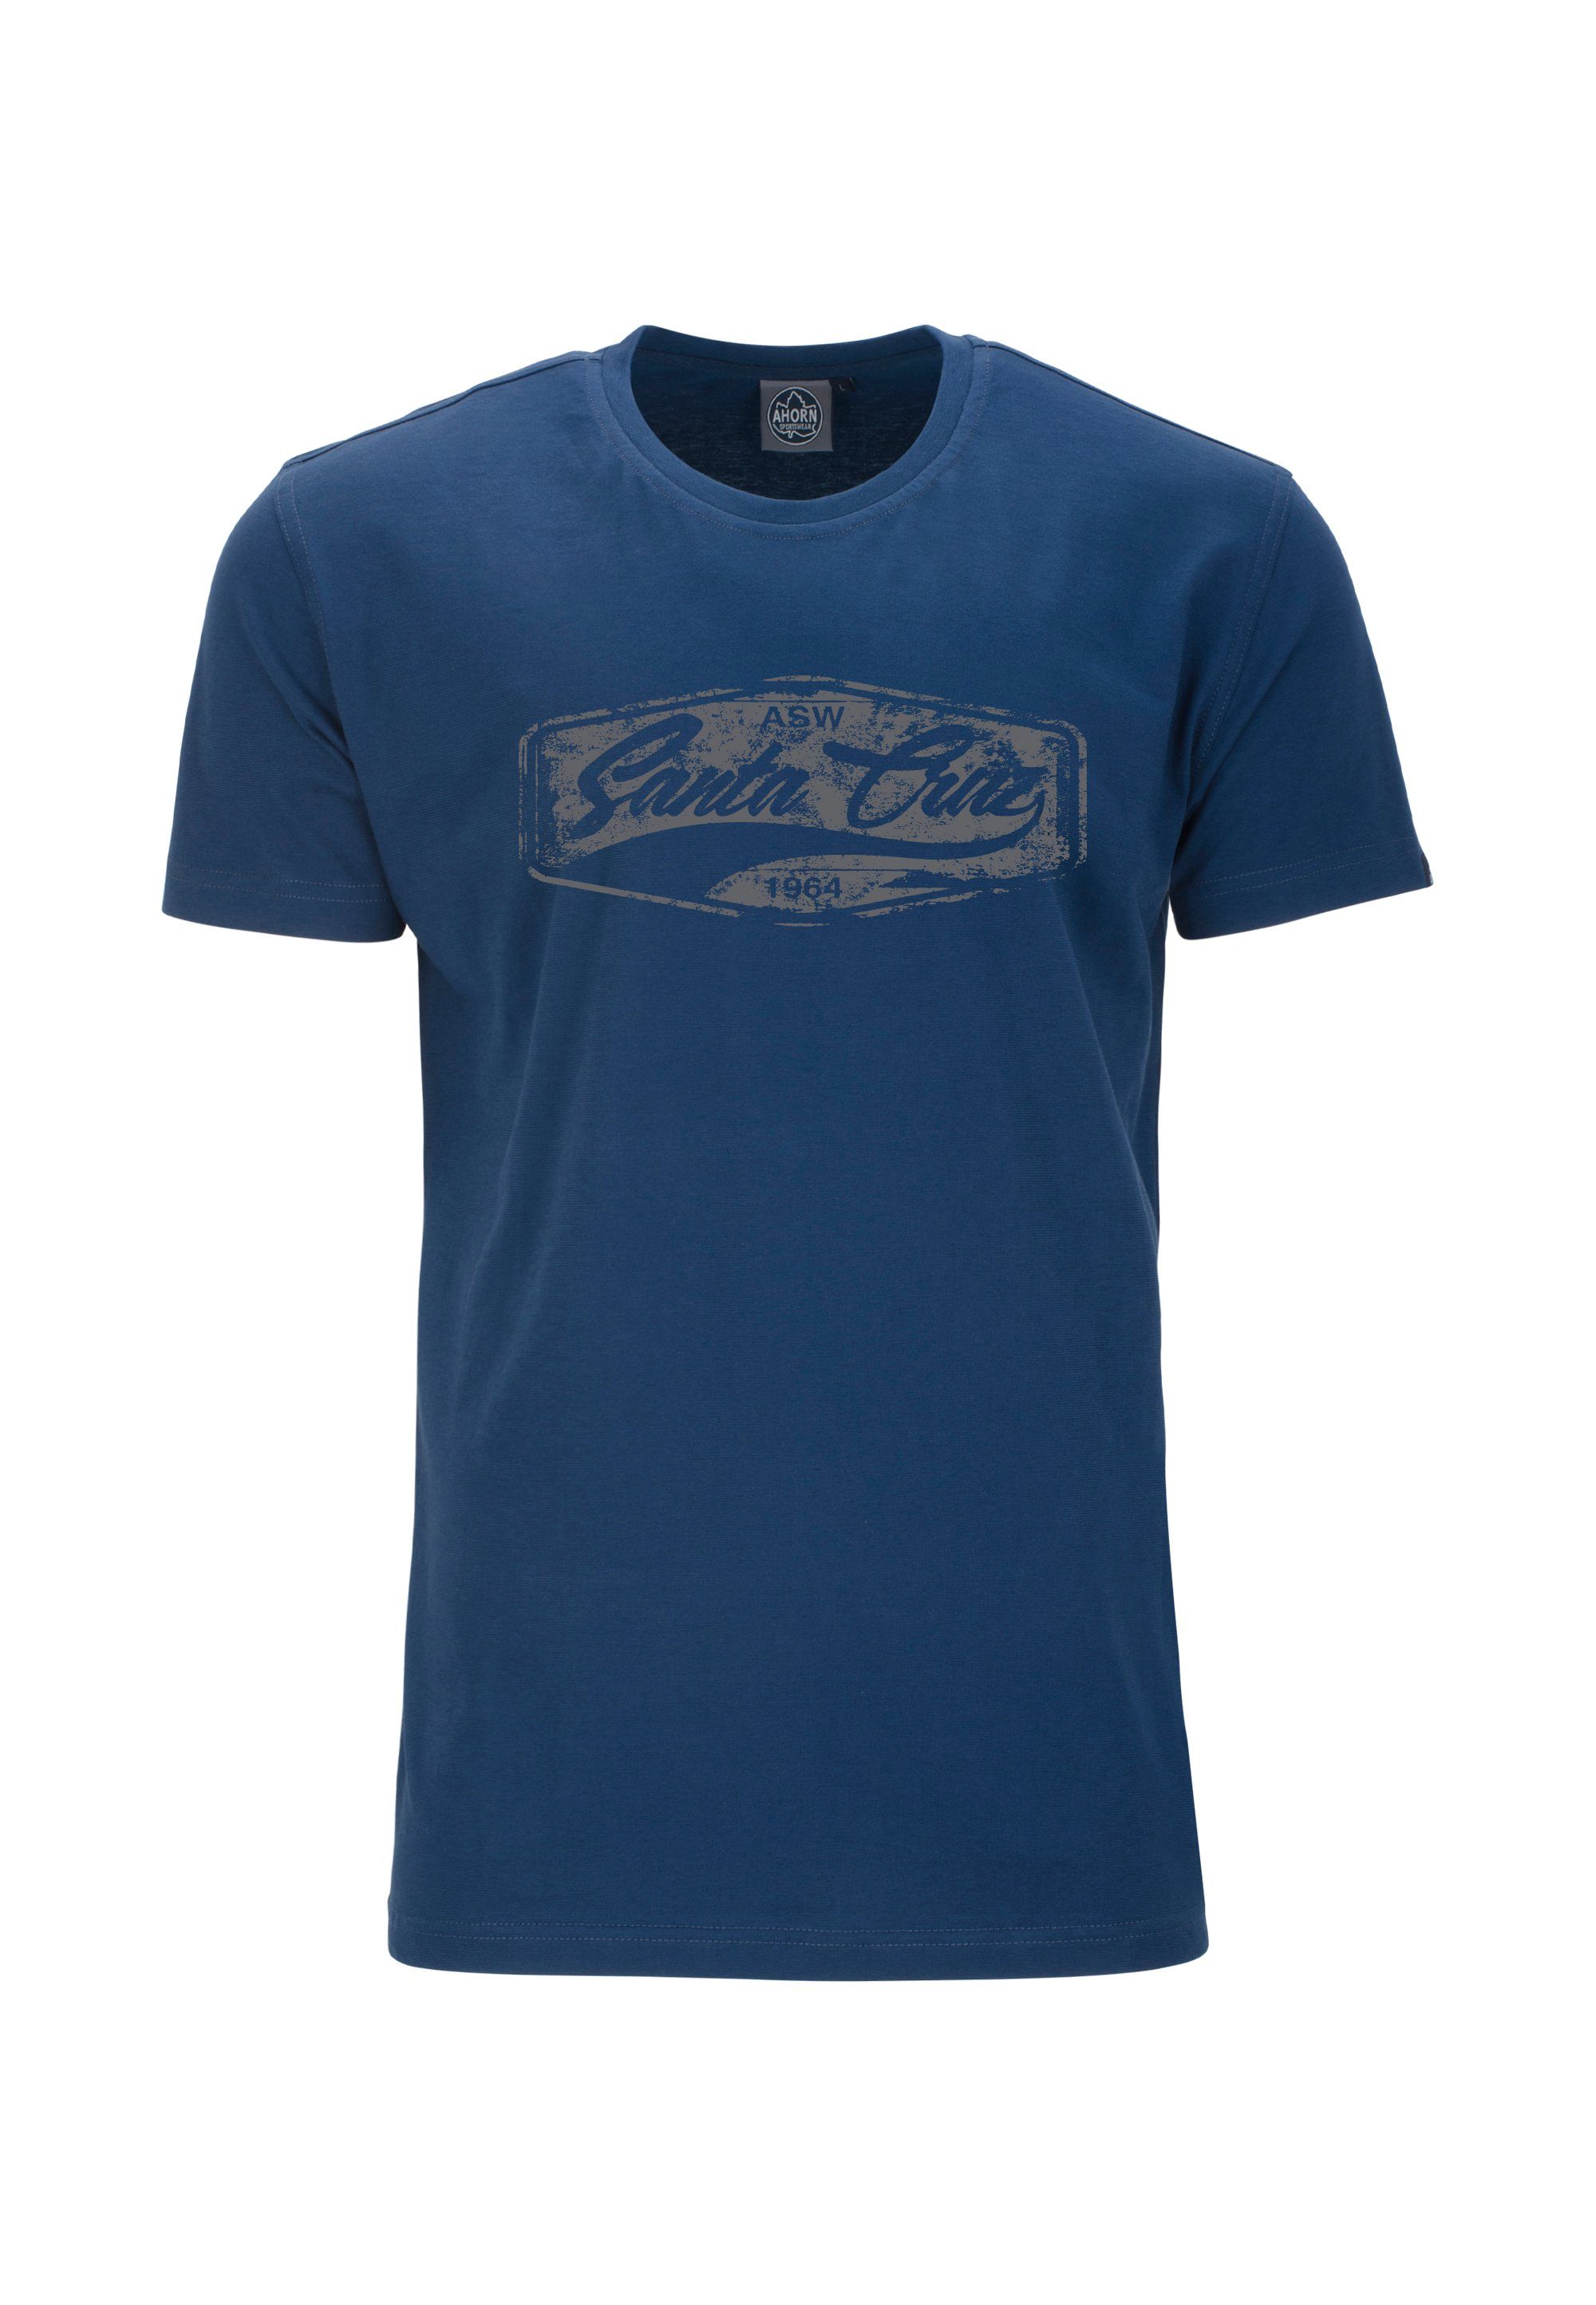 AHORN SPORTSWEAR T-Shirt SANTA CRUZ_POPPY SEED im klassischen Schnitt blau | Sport-T-Shirts